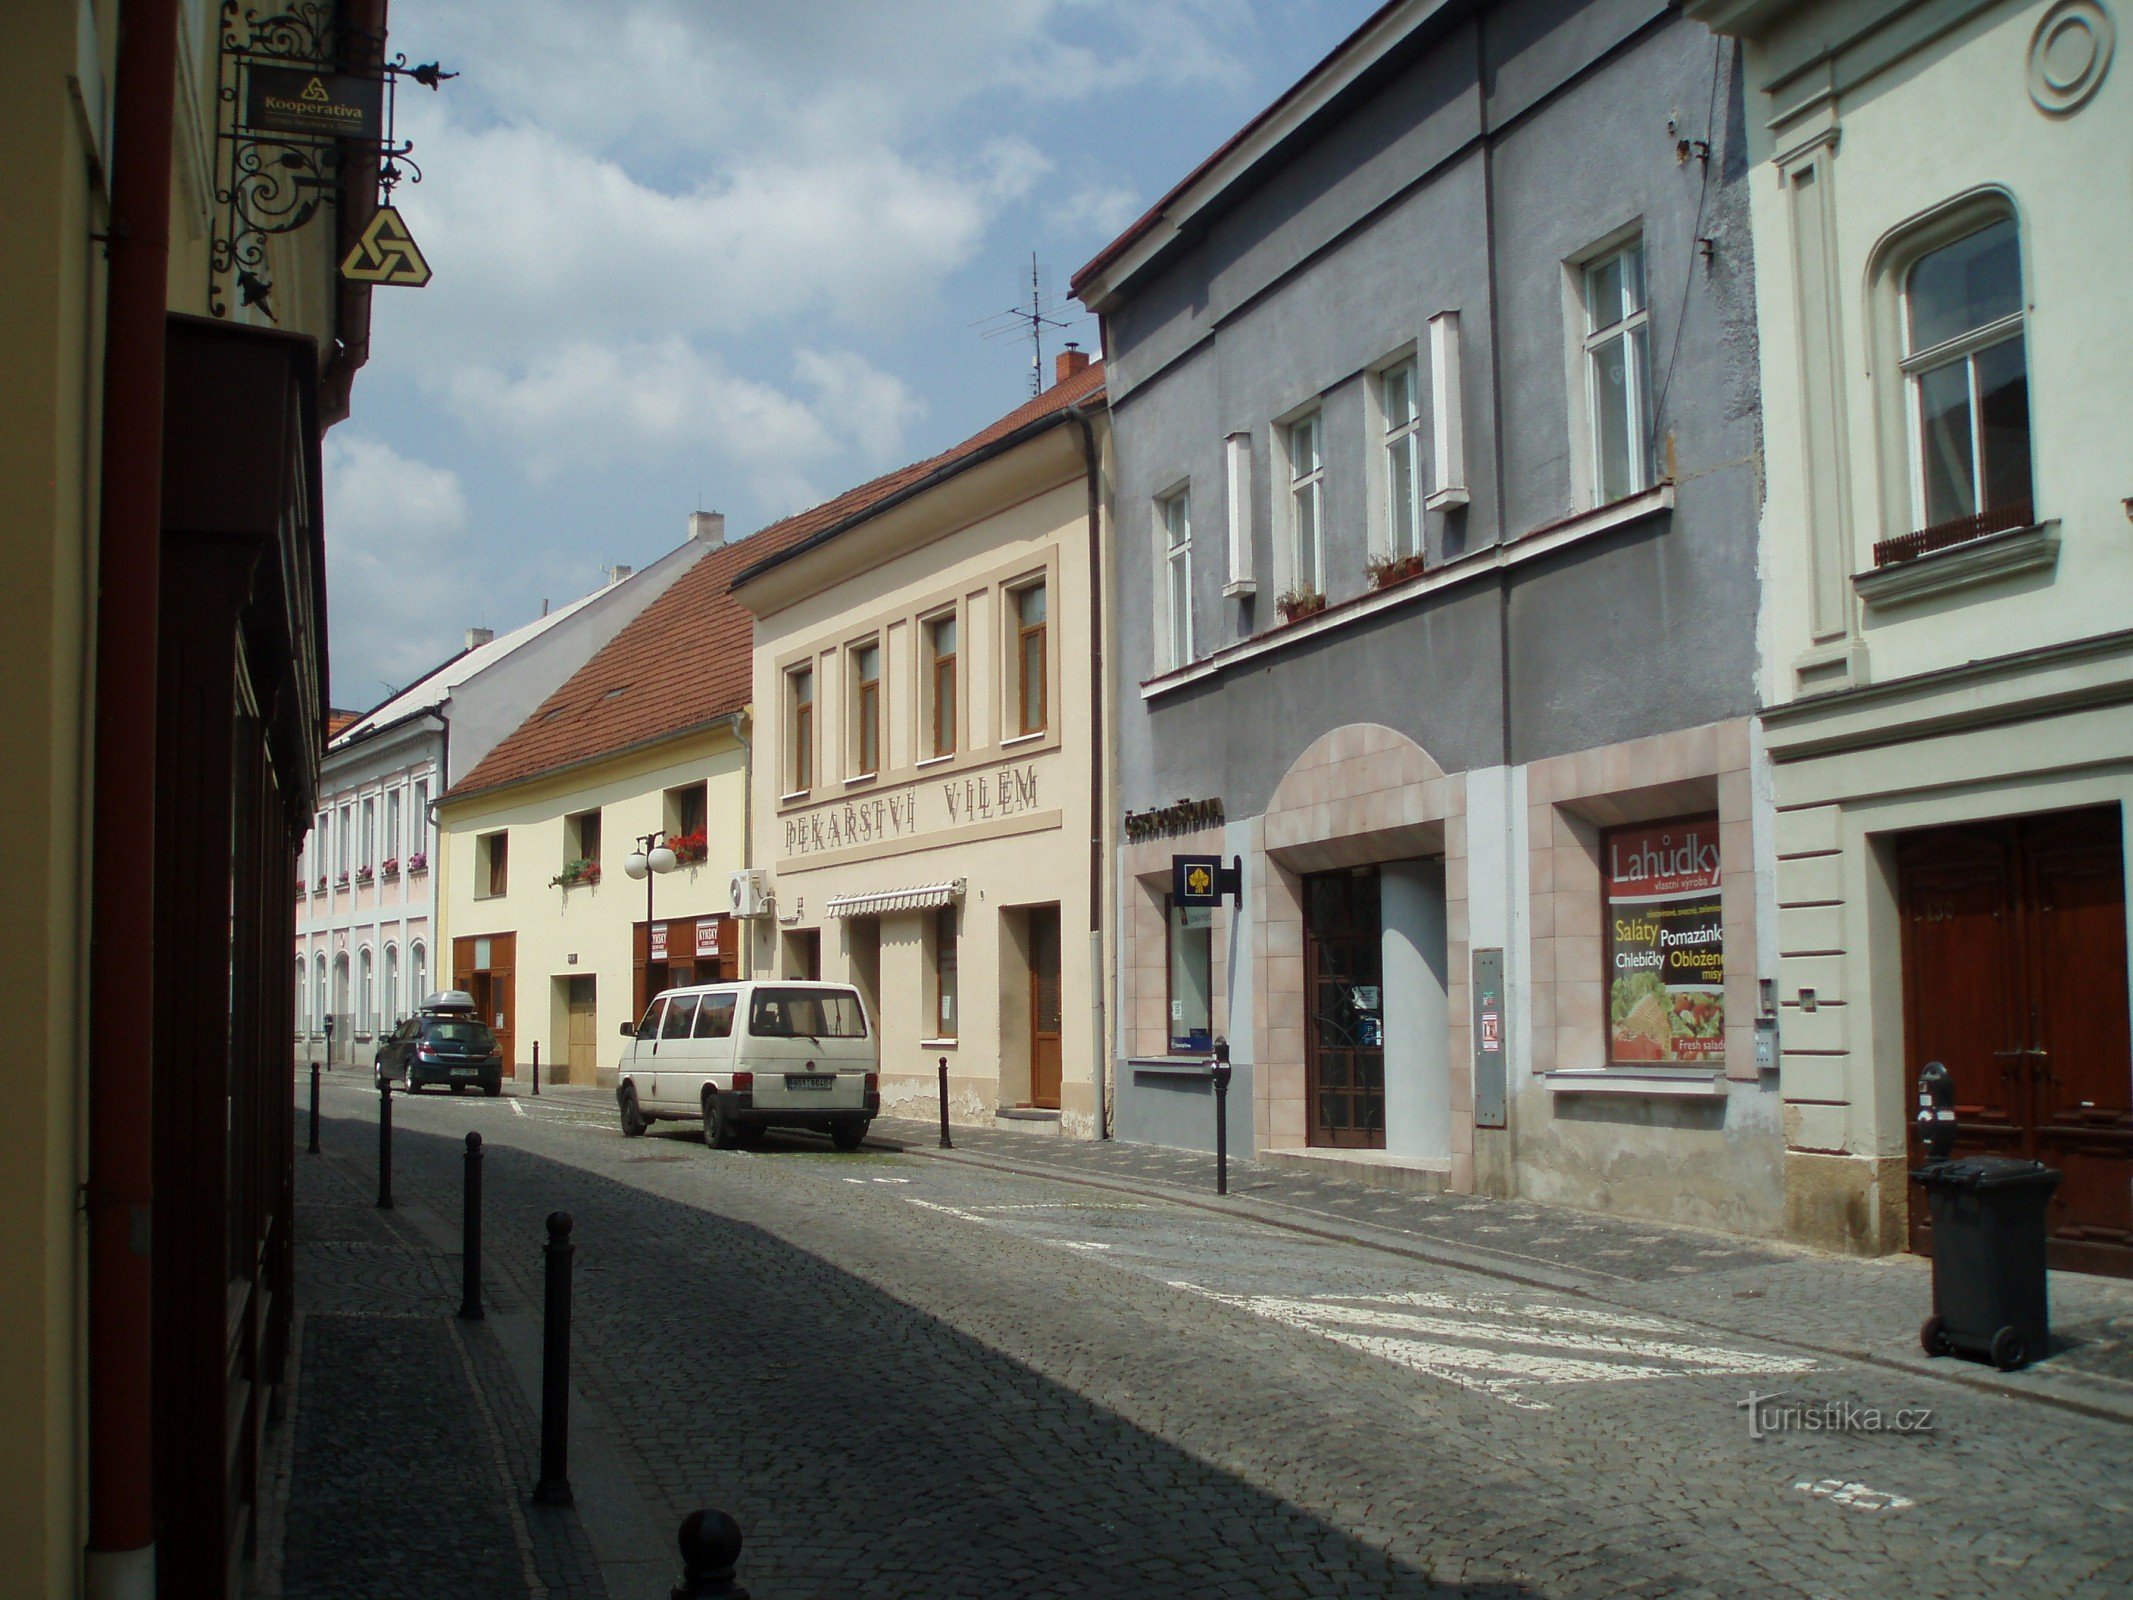 Kynského street